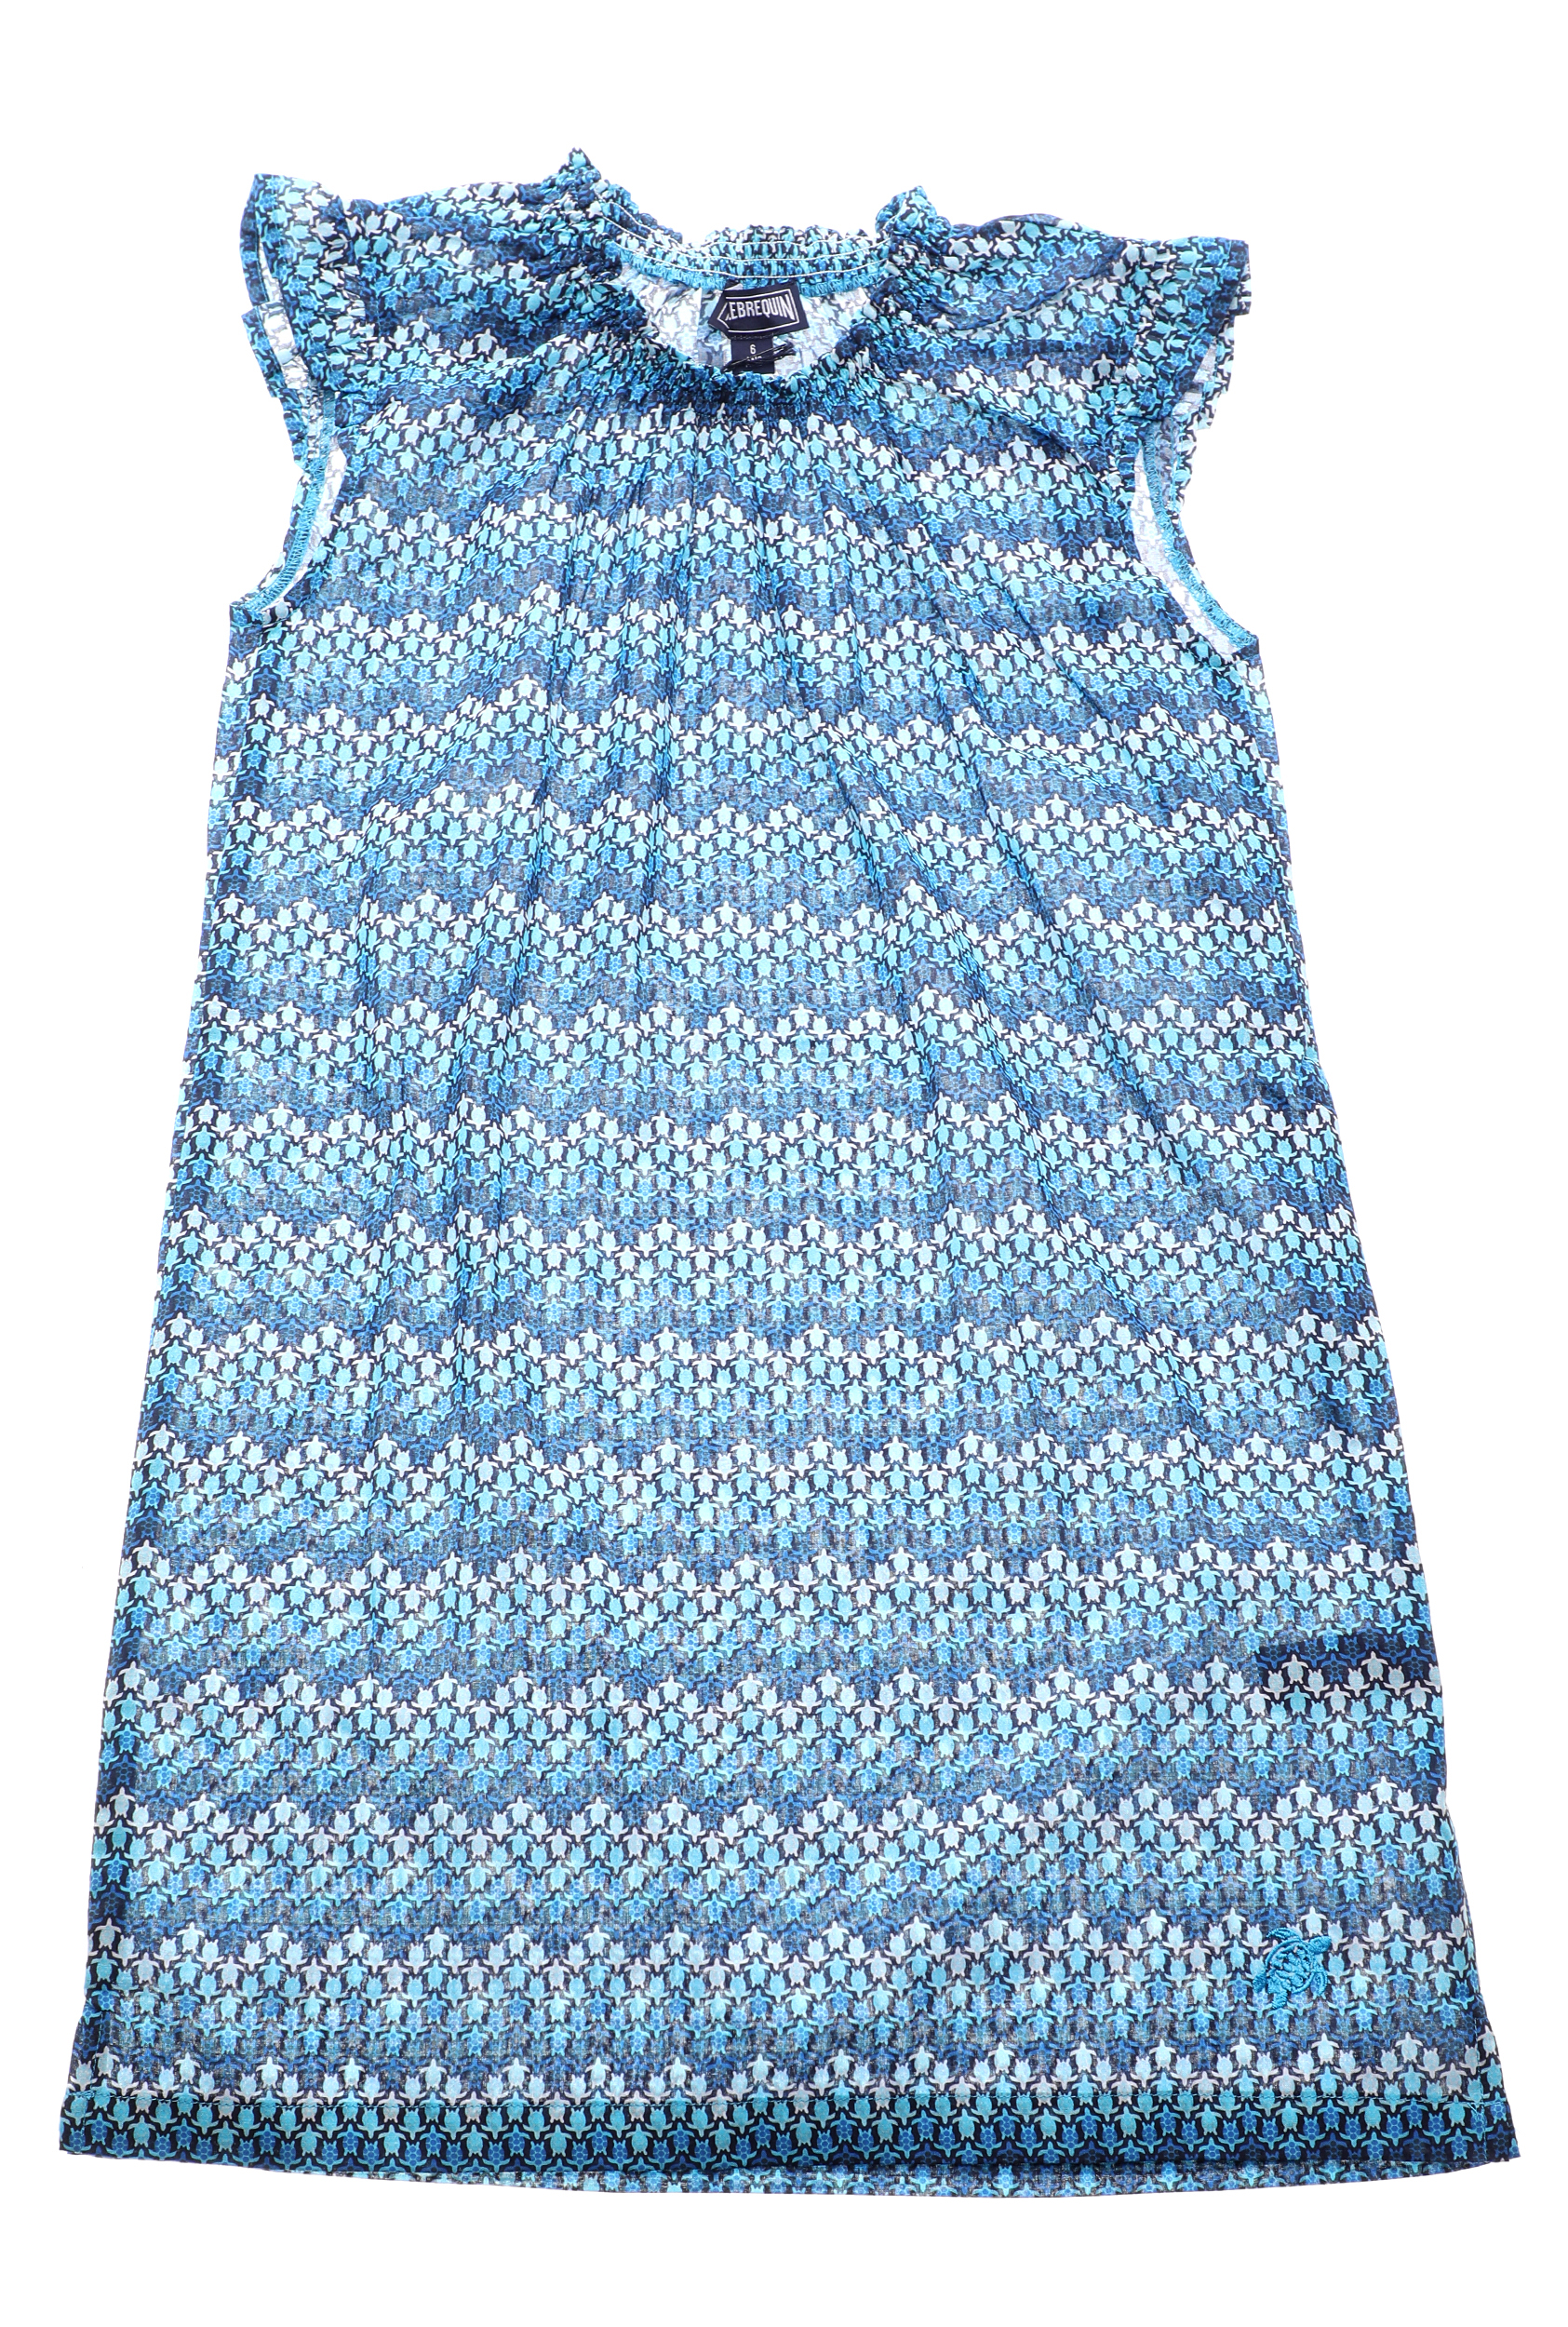 VILEBREQUIN – Παιδικο φορεμα VILEBREQUIN GAPPY μπλε